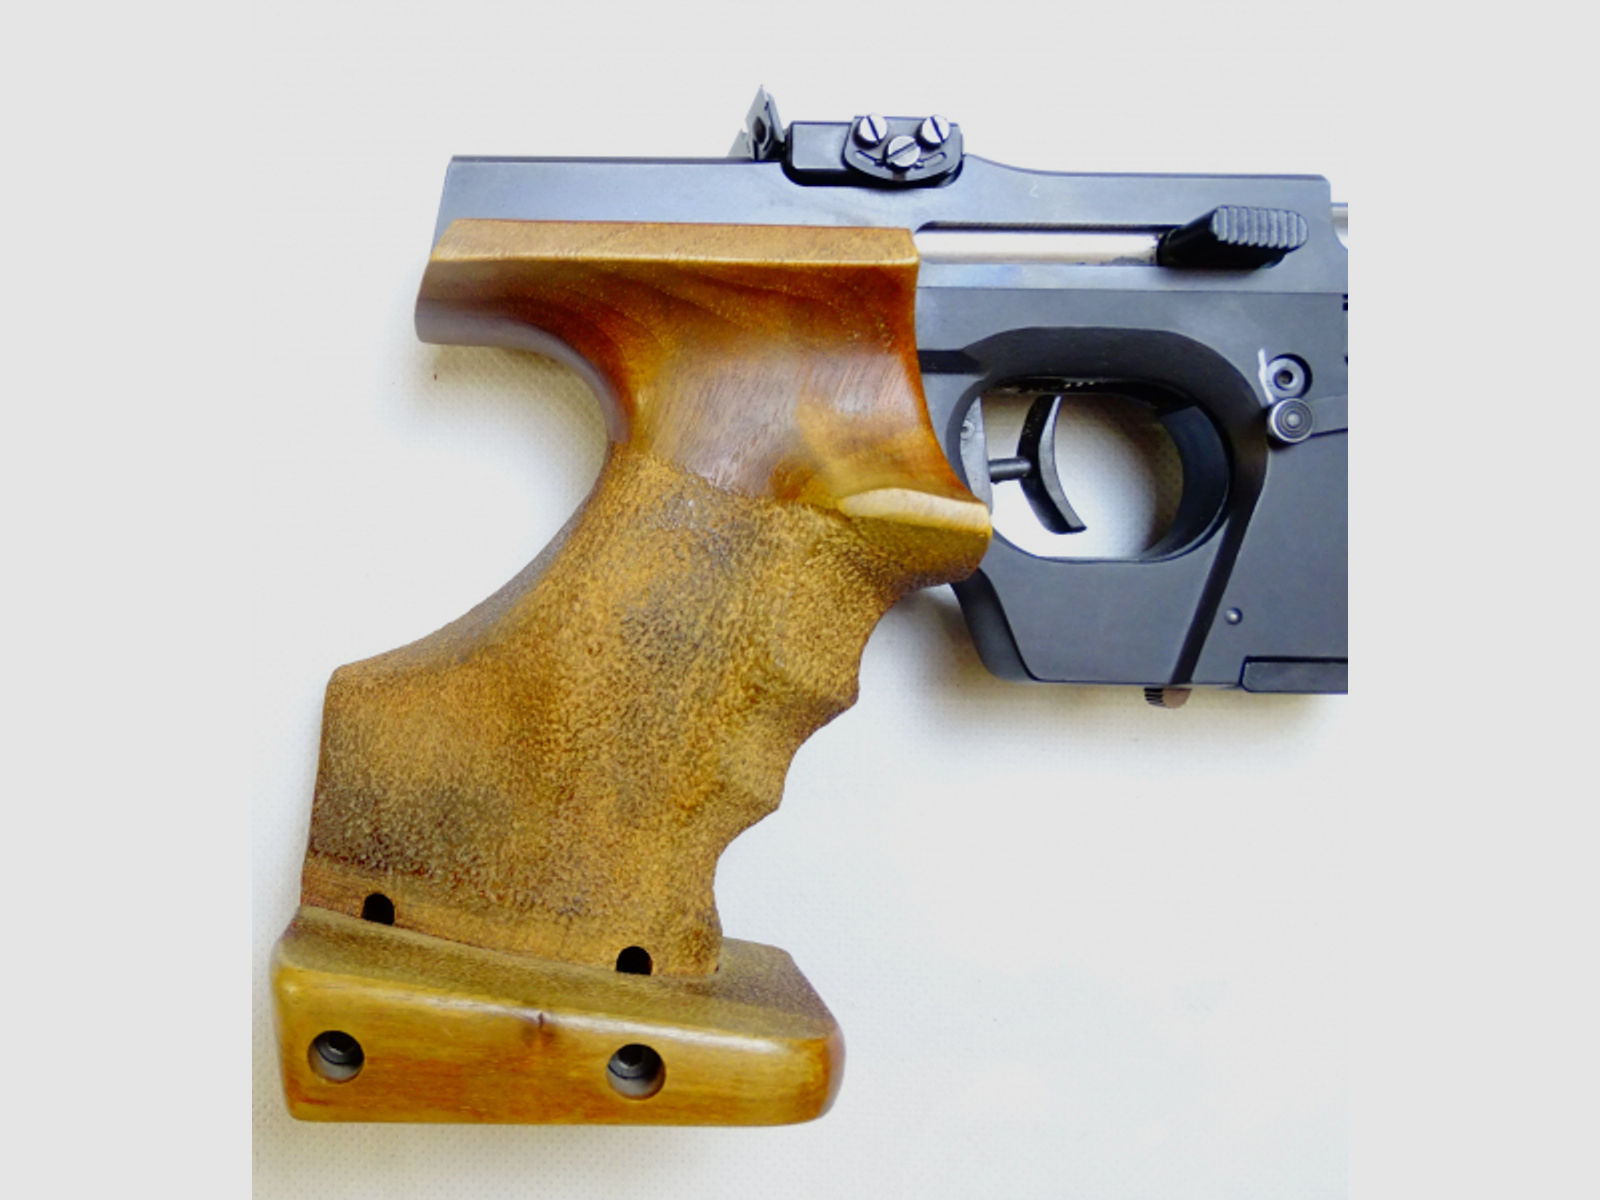 Walther GSP Sportpistole im Kaliber .22 lr.